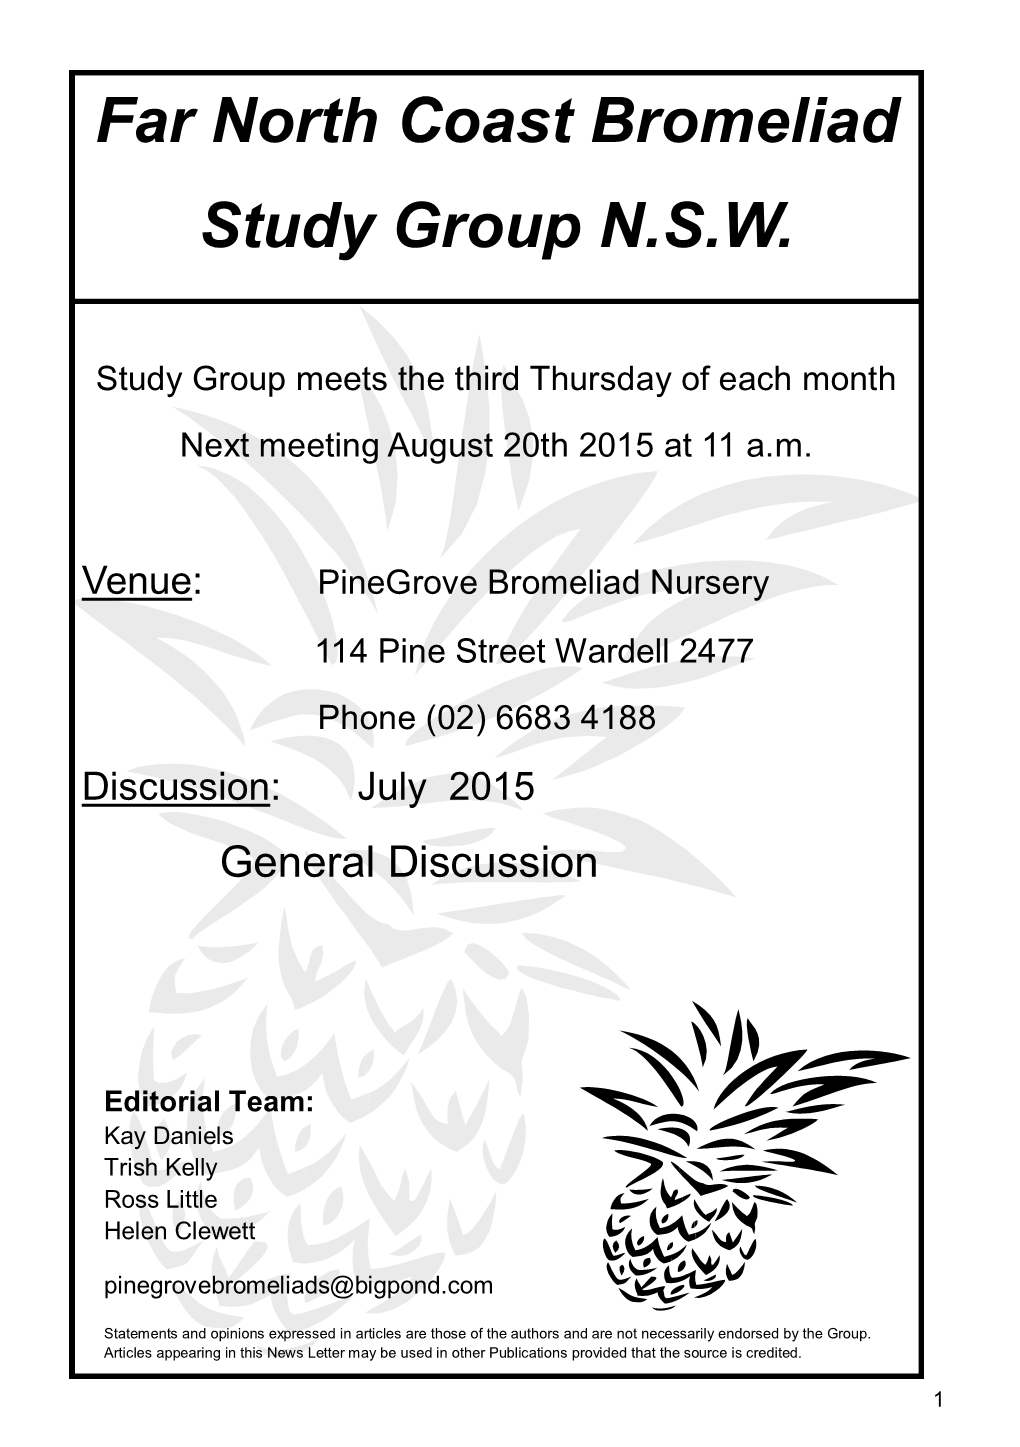 Far North Coast Bromeliad Study Group N.S.W